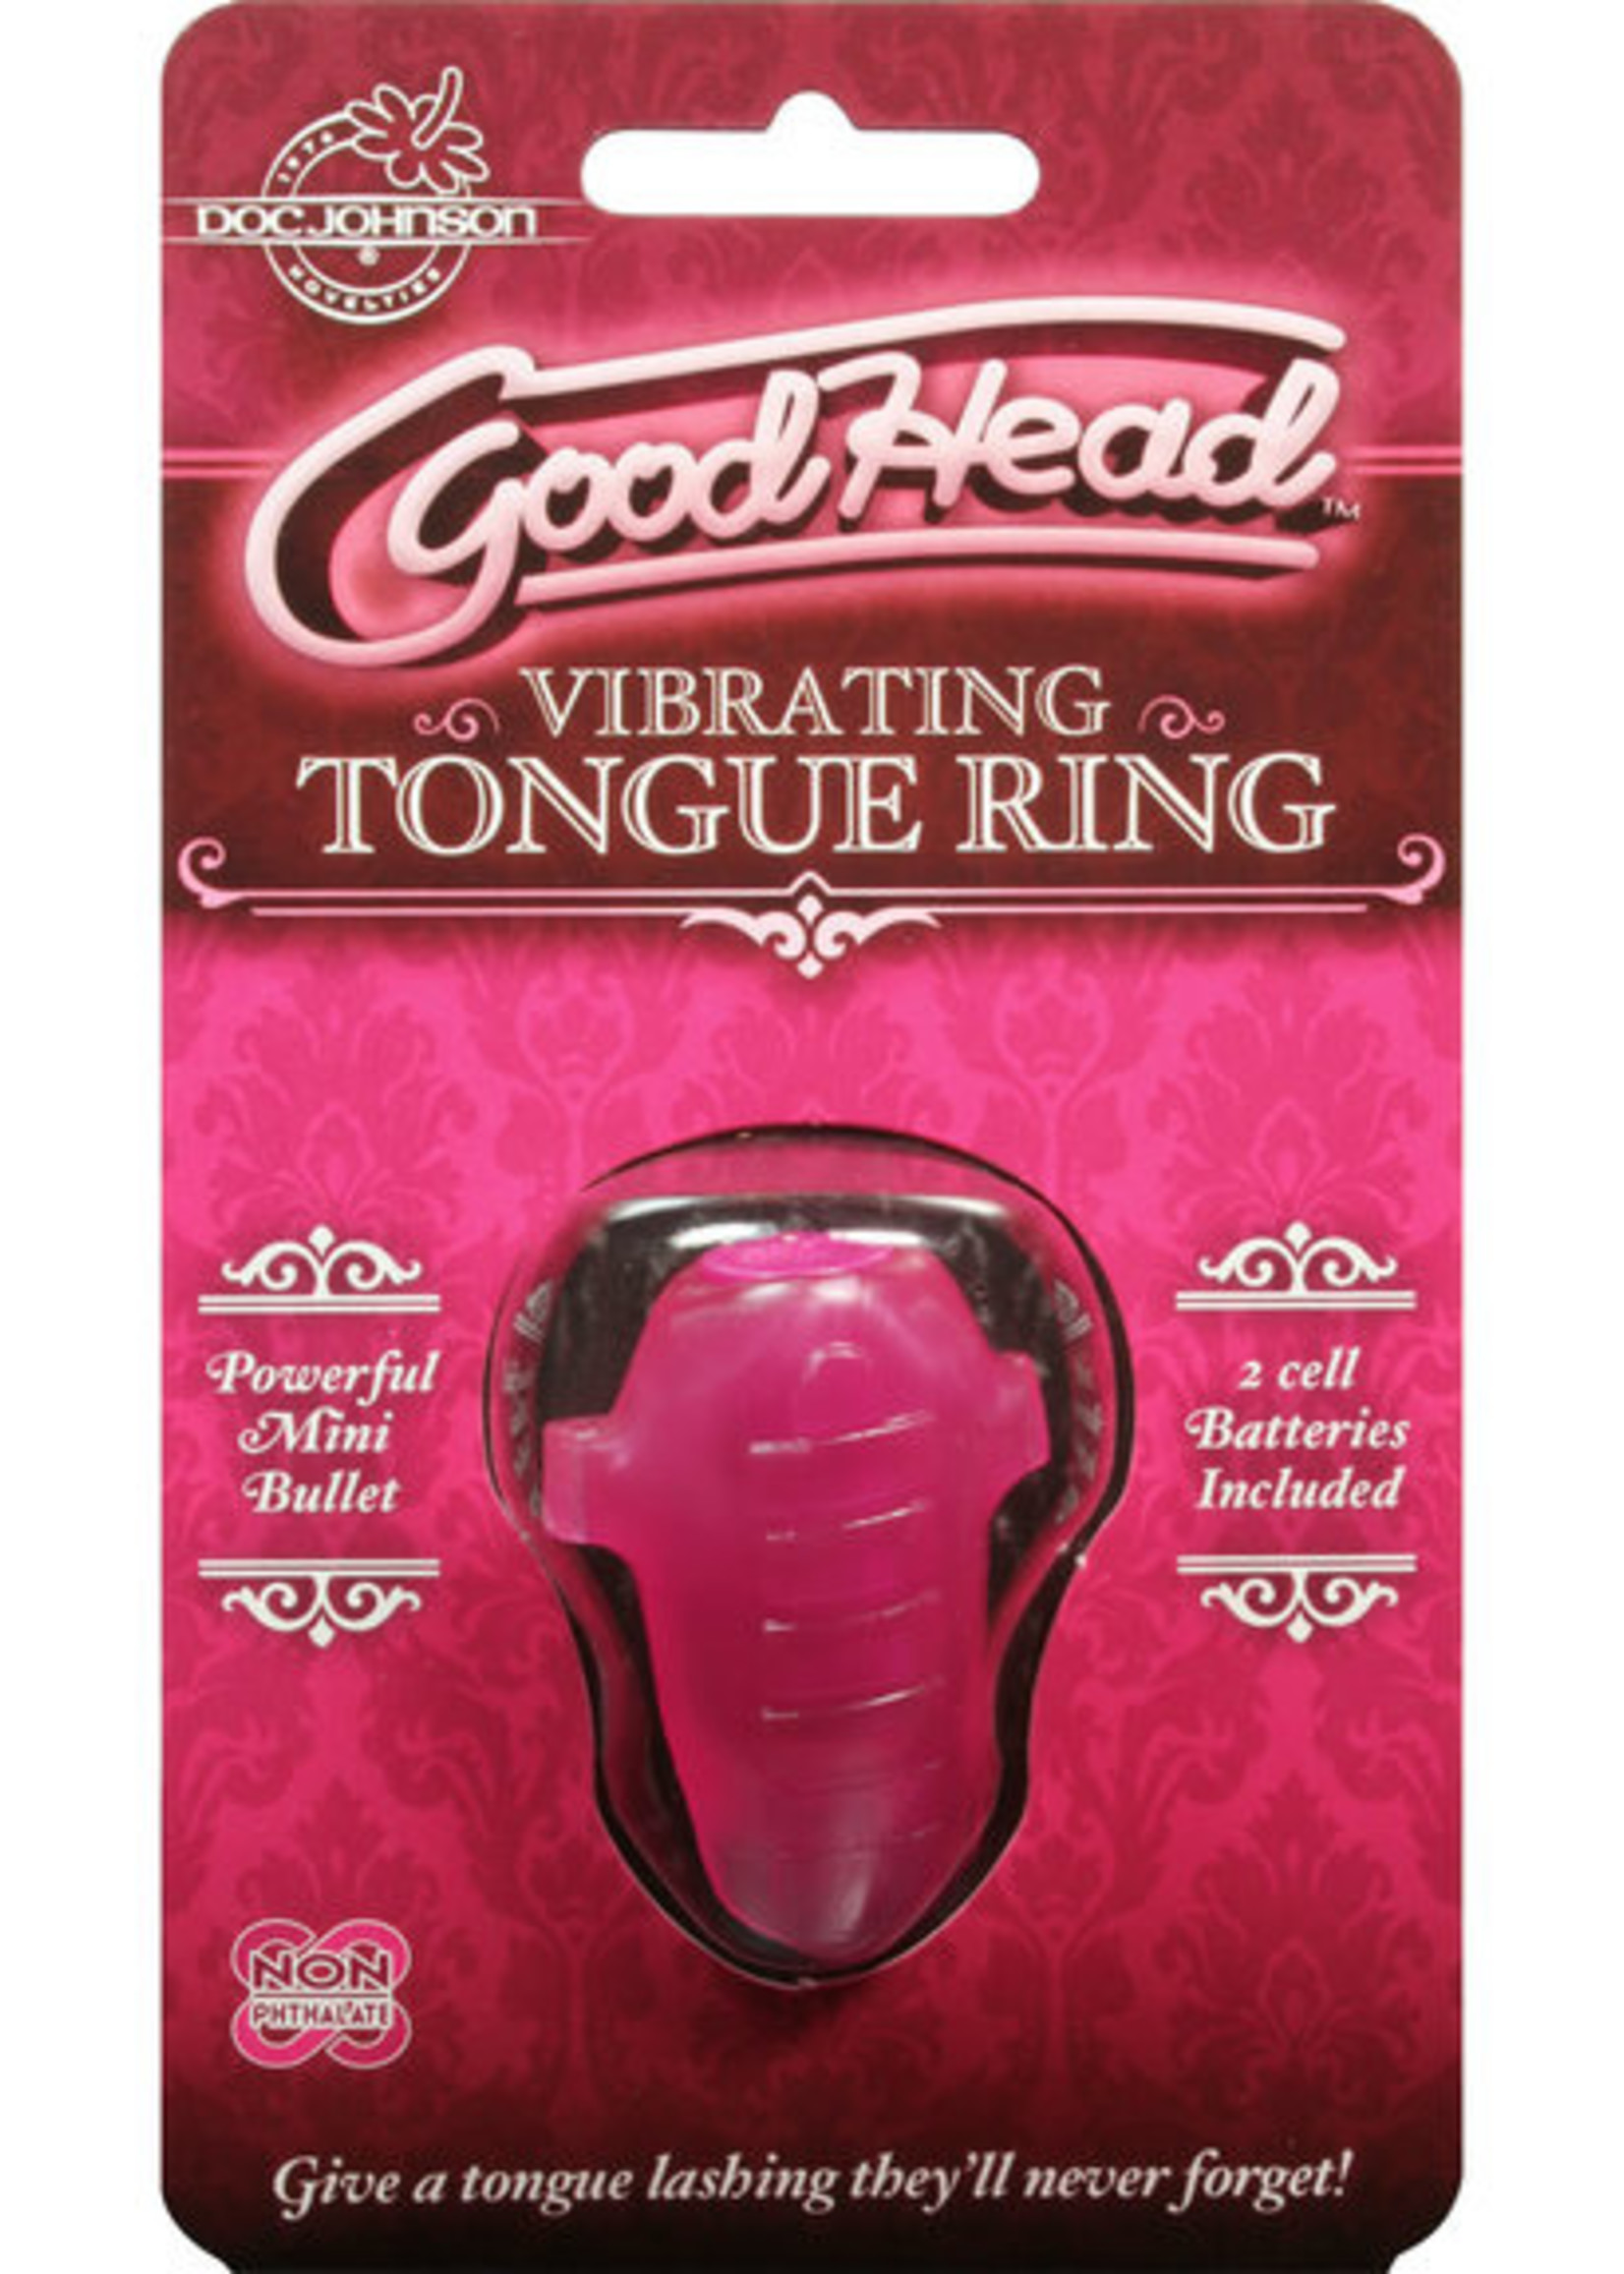 GoodHead Vibrating Tongue Ring in Pink